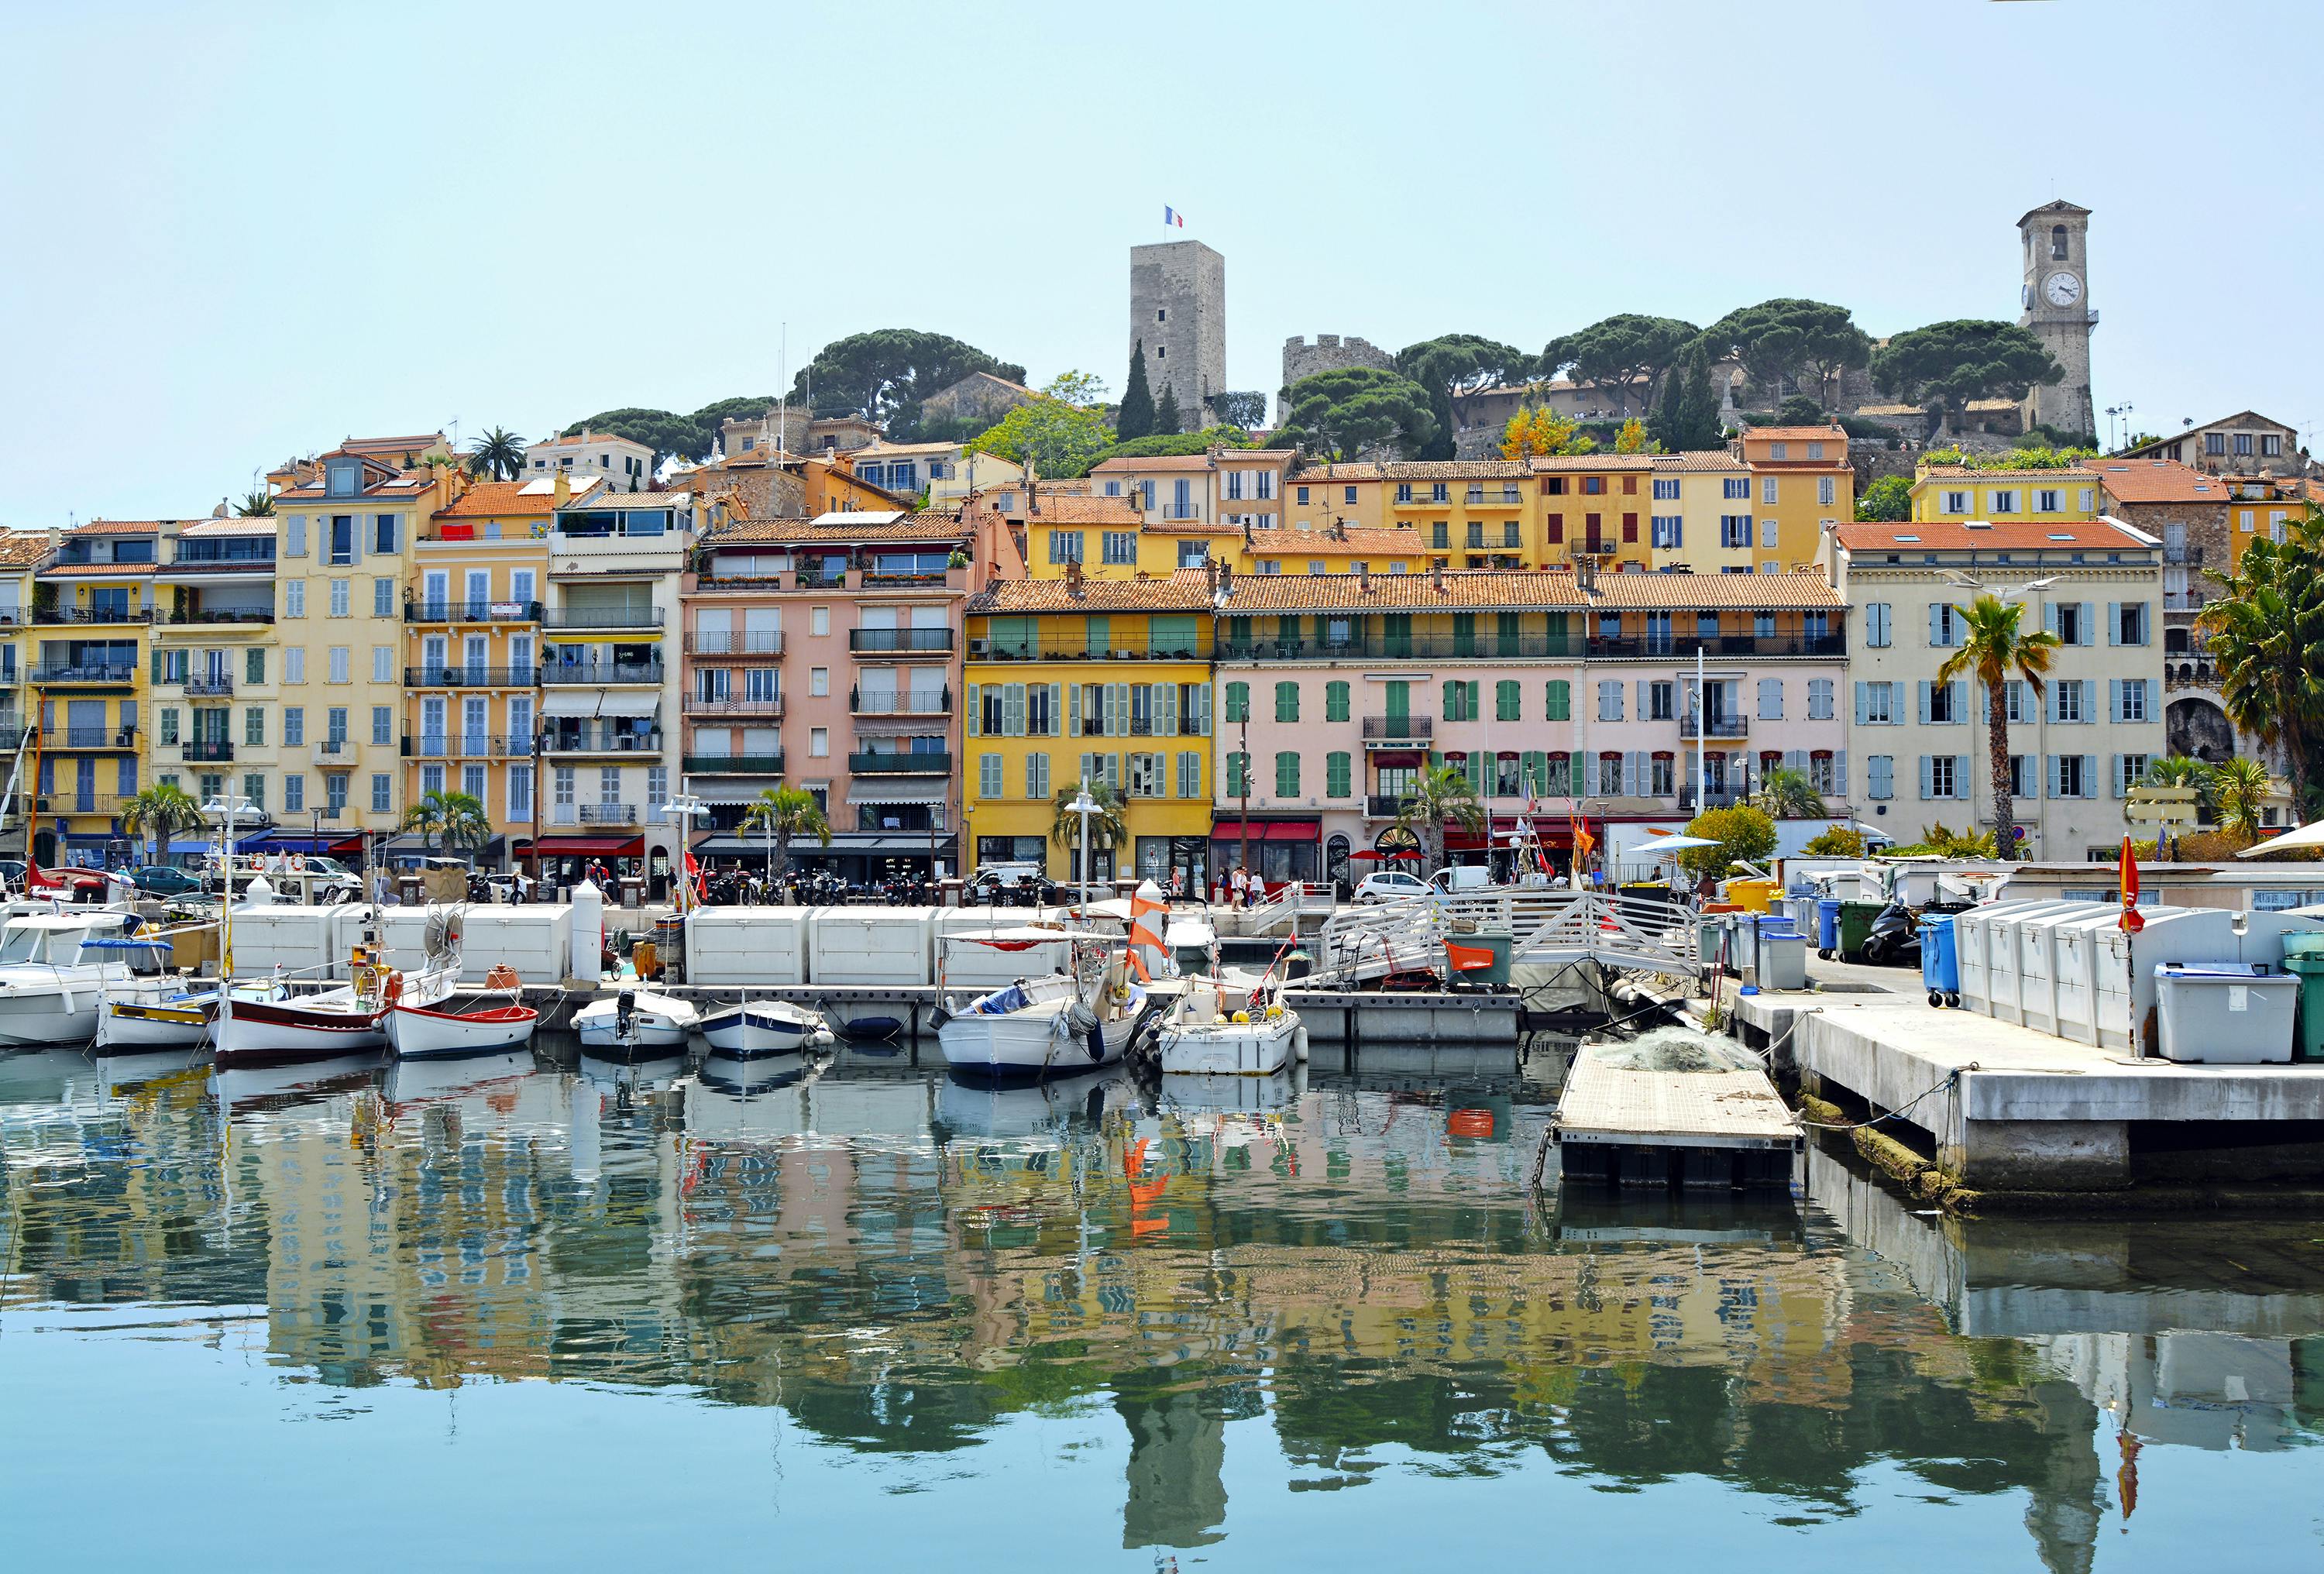 Excursão turística privada pela riviera saindo de Cannes